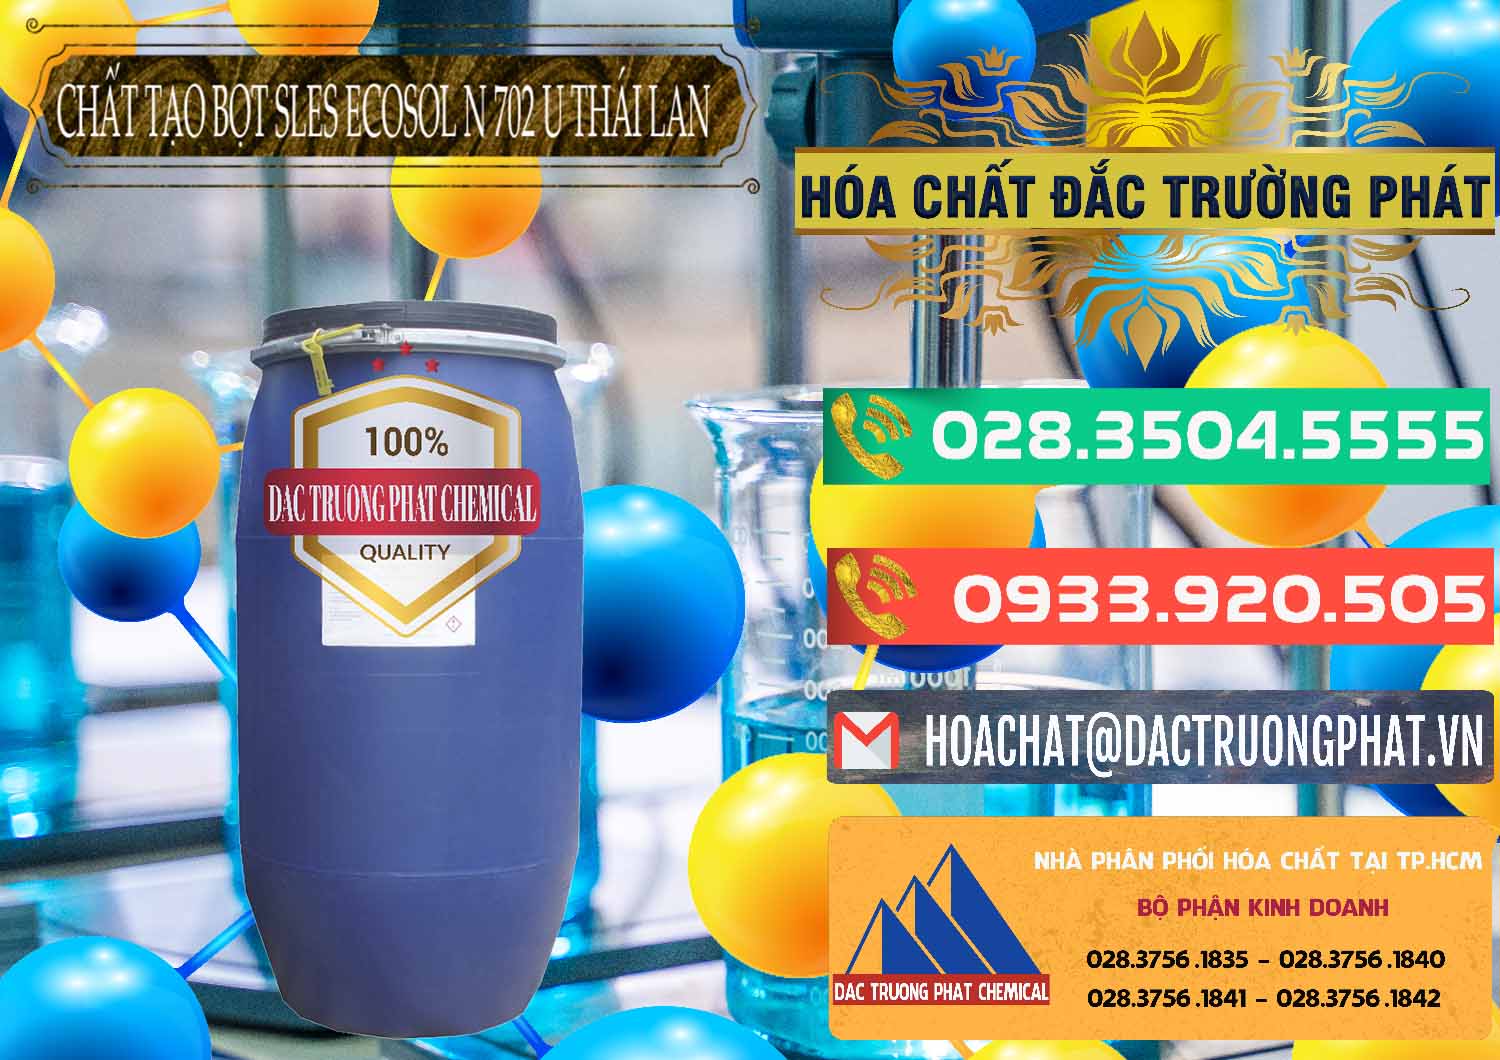 Công ty chuyên bán & phân phối Chất Tạo Bọt Sles - Sodium Lauryl Ether Sulphate Ecosol N 702 U Thái Lan - 0254 - Nơi phân phối _ cung cấp hóa chất tại TP.HCM - congtyhoachat.com.vn